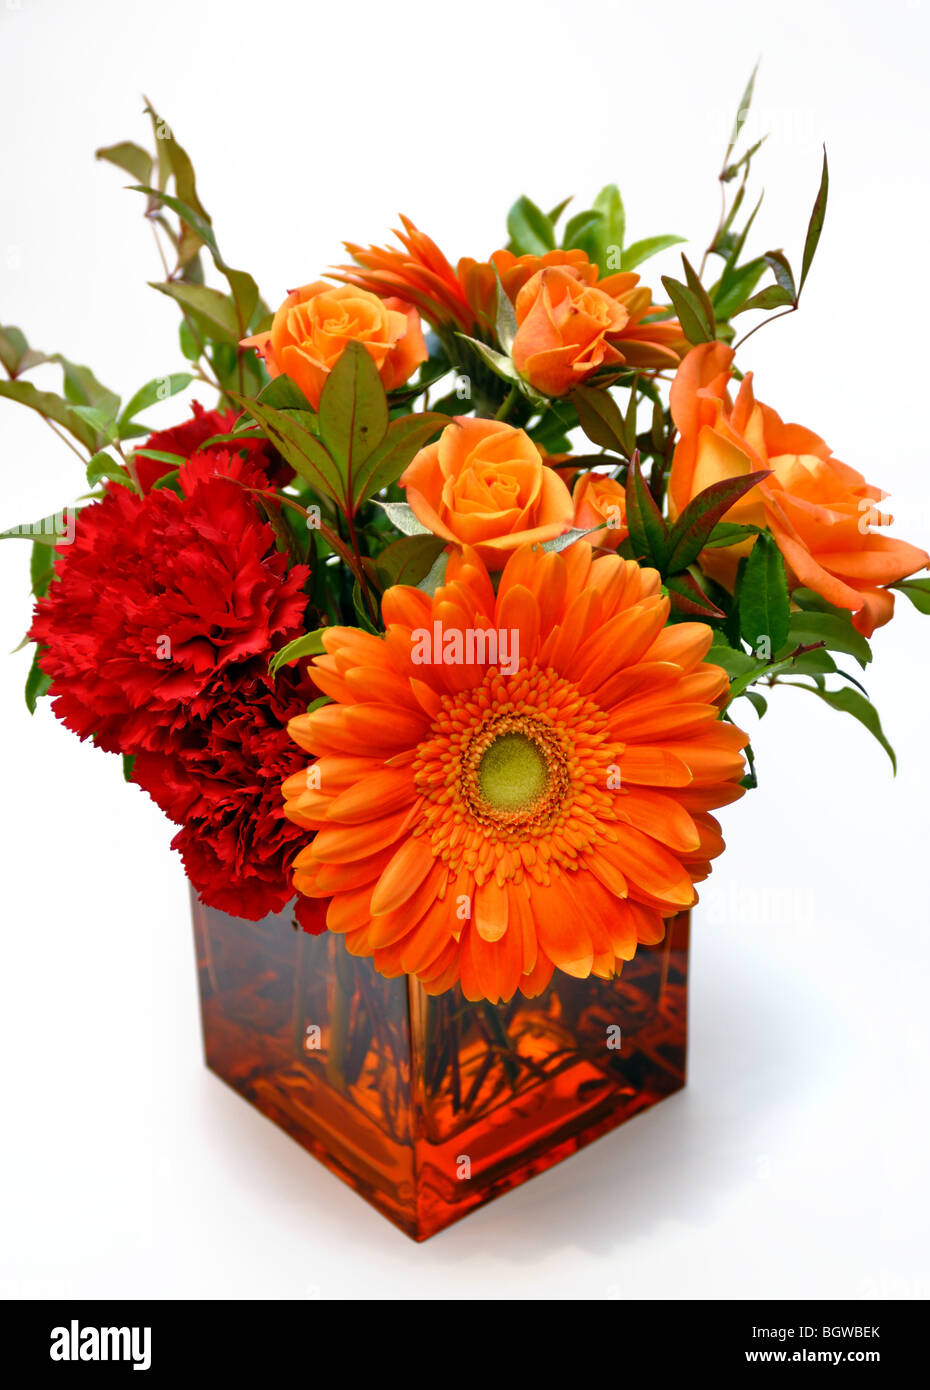 Un arrangement de fleurs orange colorés contenant des marguerites et roses, dans un vase en verre carré. Banque D'Images